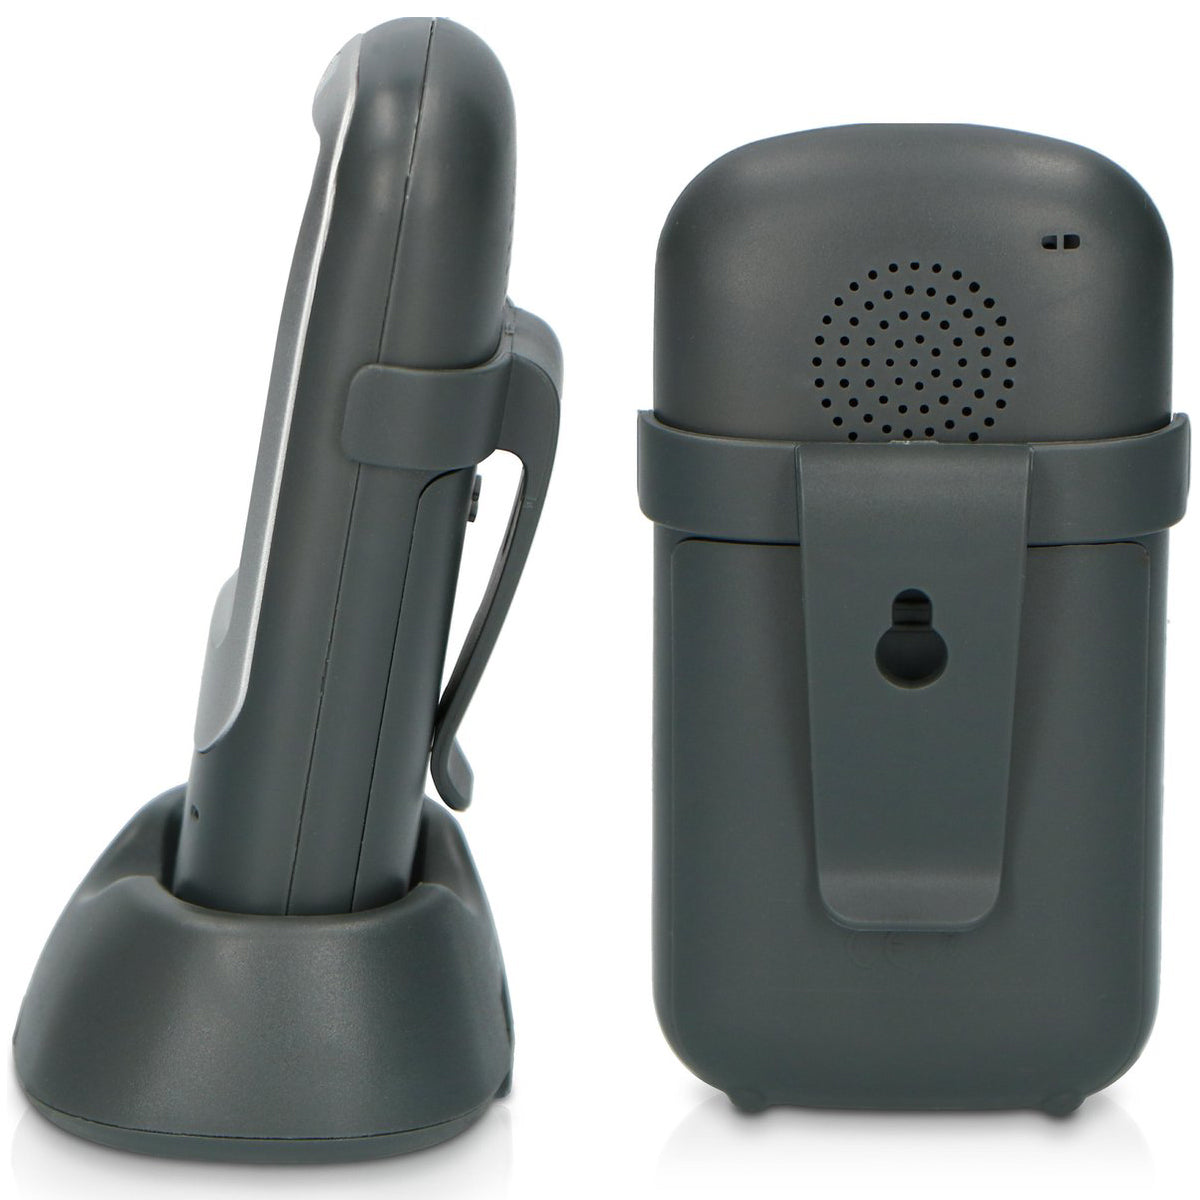 De Alecto digitale babyfoon DBX-68GS is van alle gemakken voorzien. De microfoongevoeligheid is instelbaar en je met een afstand van tot wel 1000 meter met je kindje praten. De outdoor babyfoon werkt ook bij extrreme temperaturen moeiteloos. VanZus